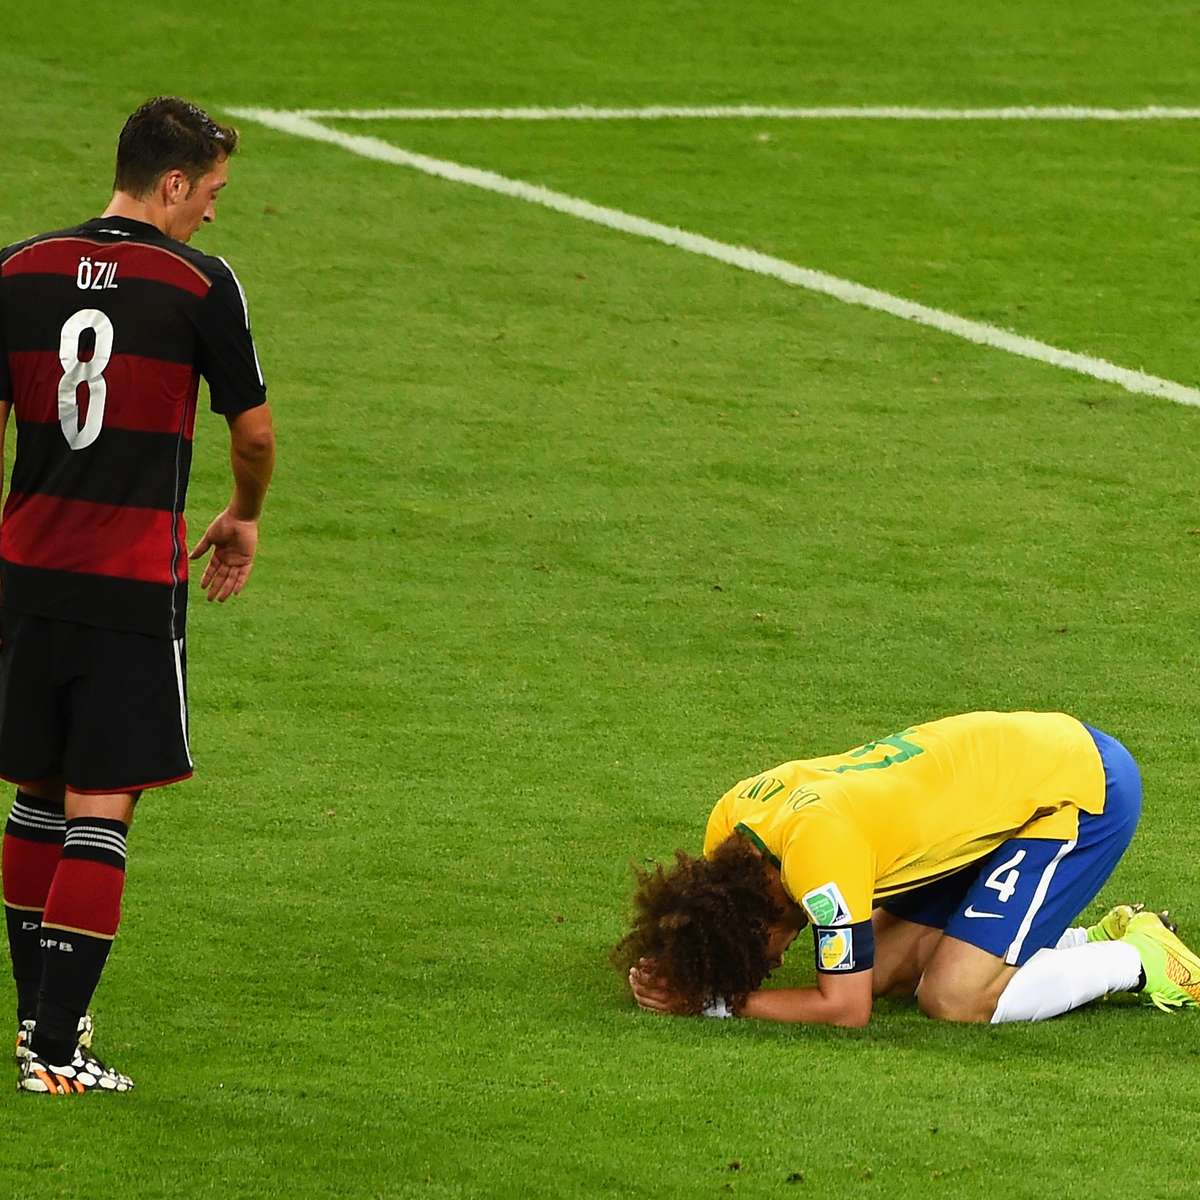 Confira as imagens da goleada da Seleção Brasileira de futebol feminino  contra a África do Sul - Gazeta Esportiva